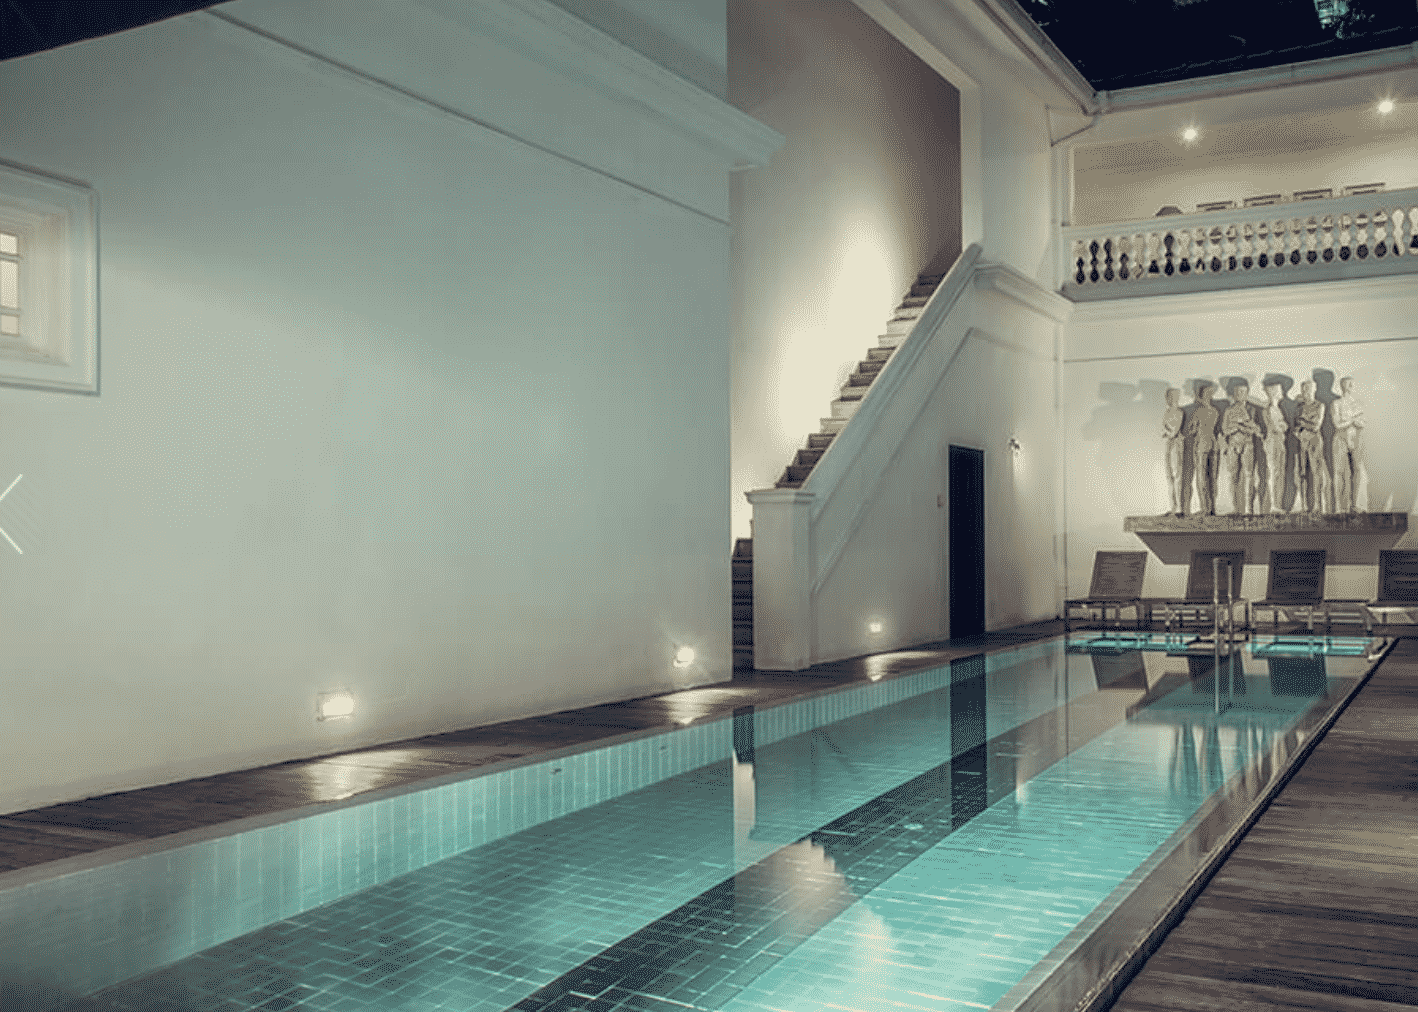 Pool in Sri Lanka Hotel 